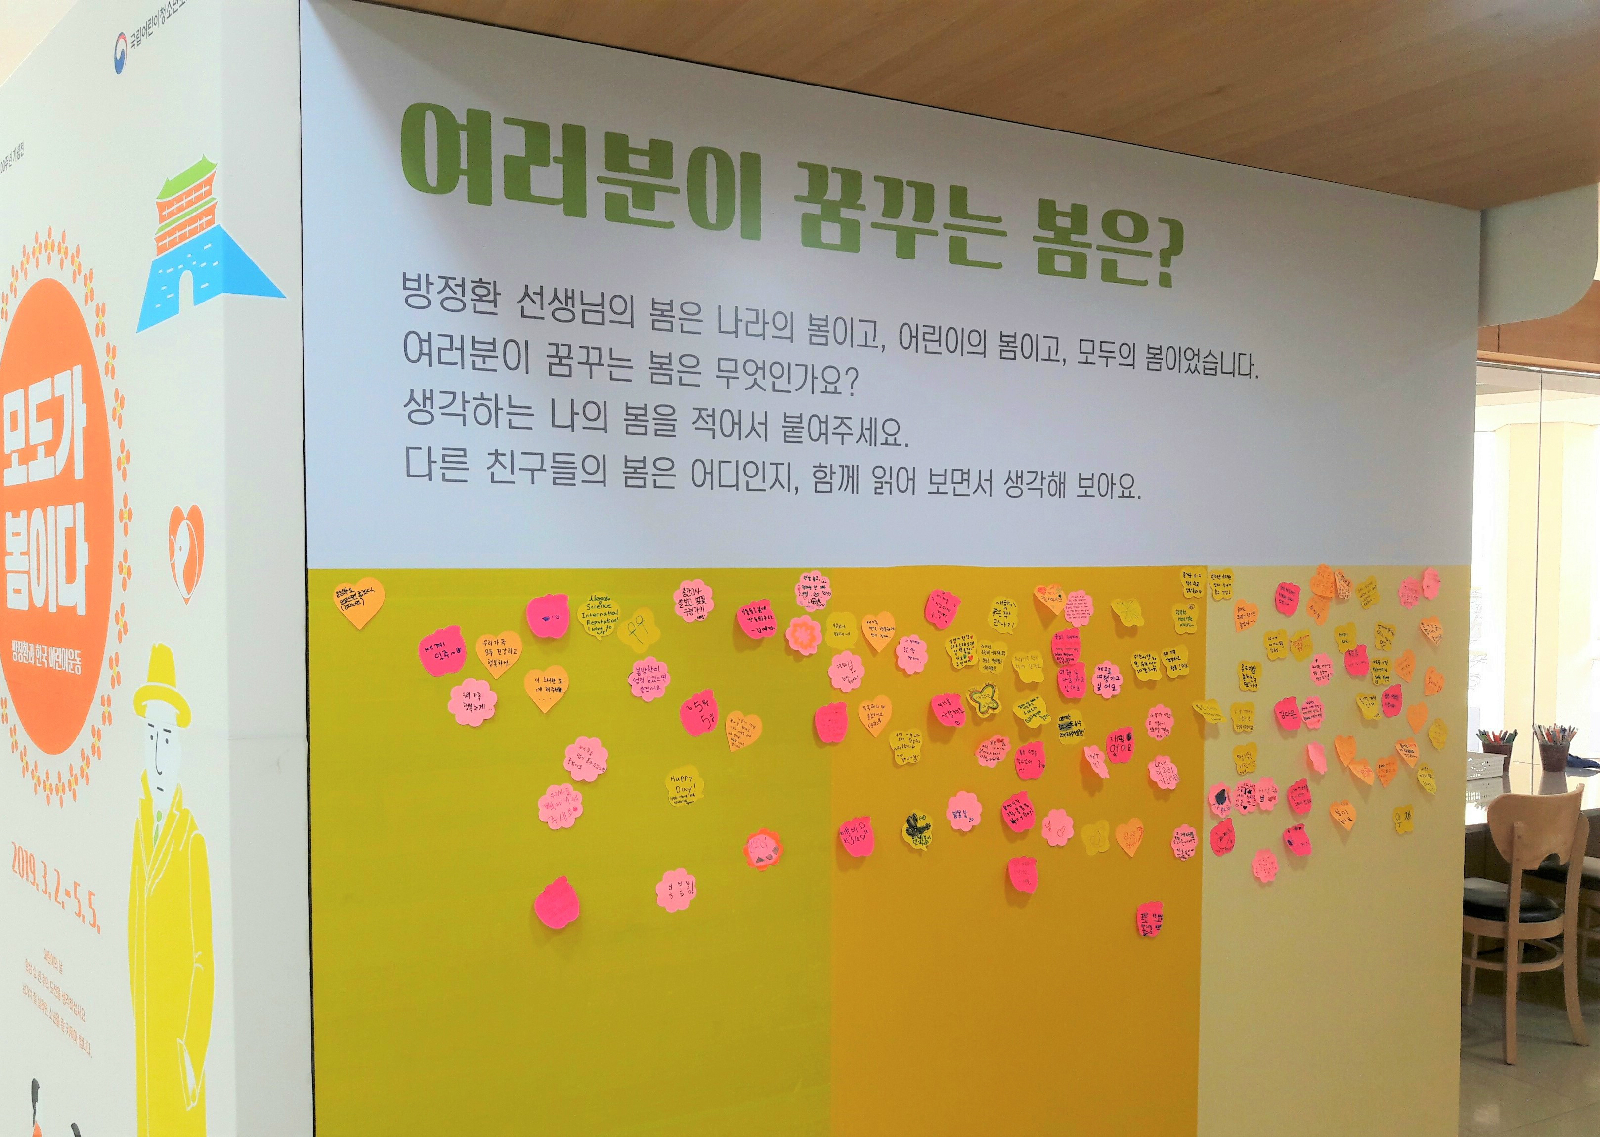 관람객들이 꿈꾸는 봄을 포스트잇에 적어 붙여놓은 공간